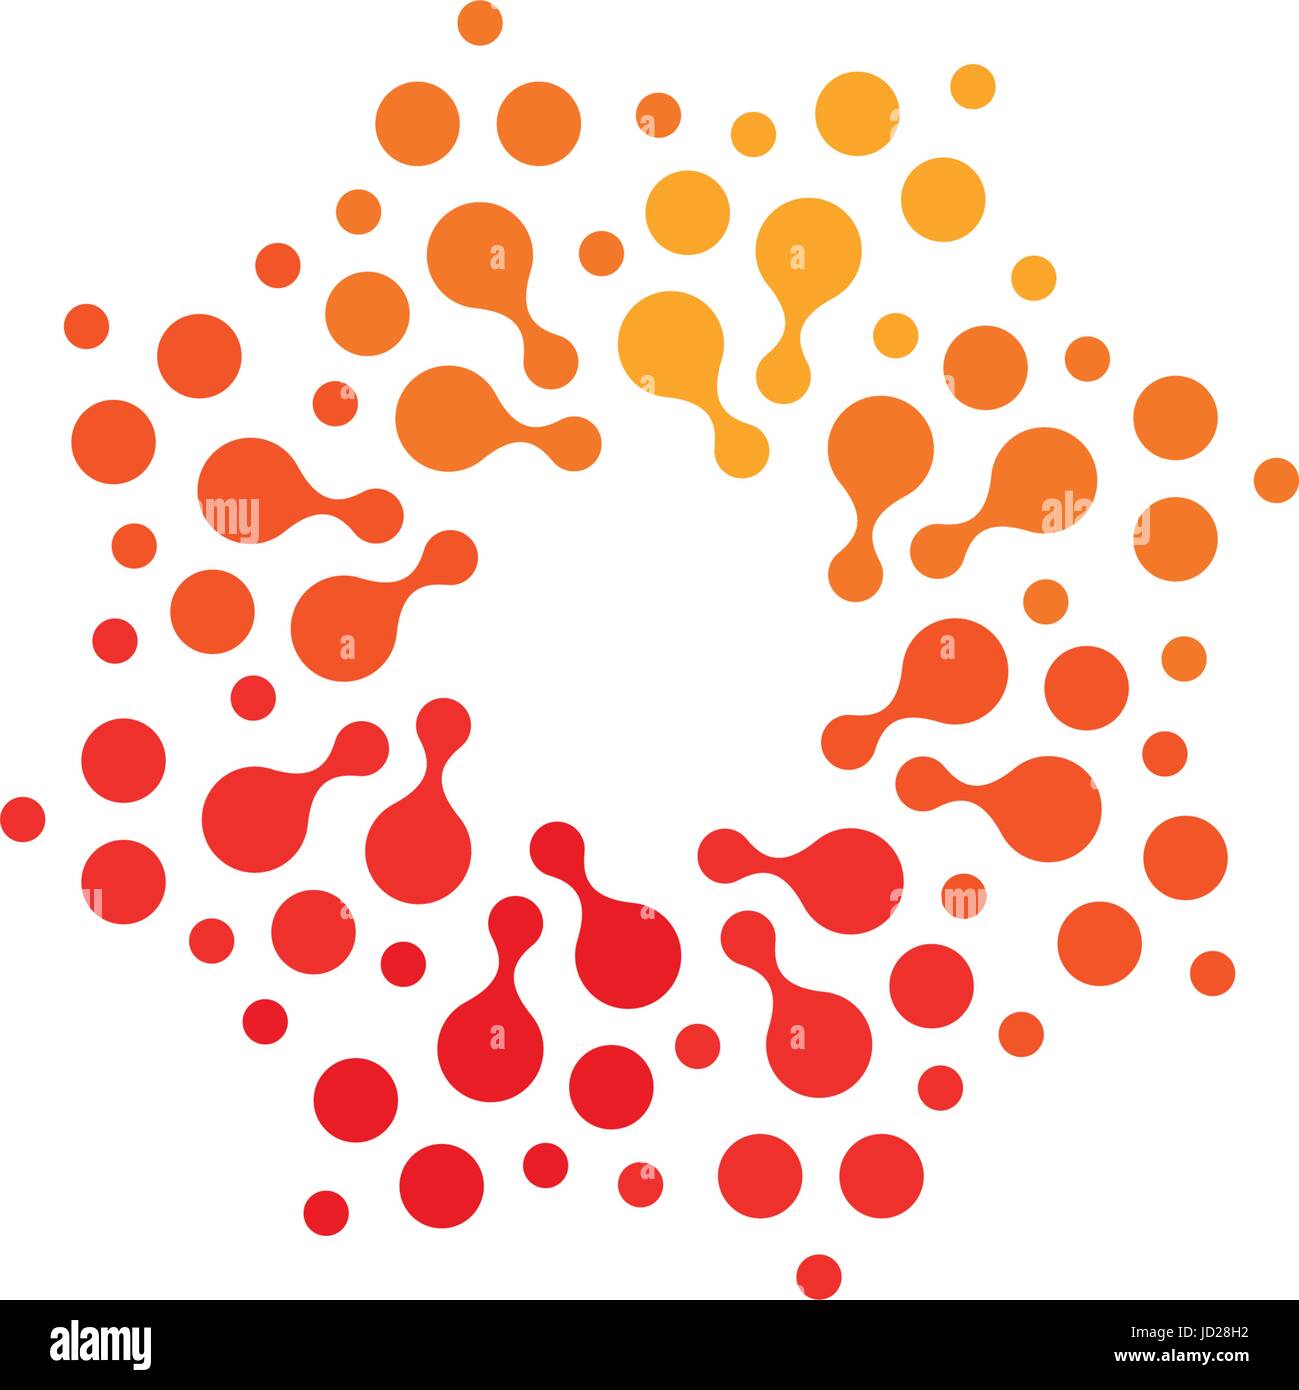 Abstract isolata forma tonda arancione e il colore rosso, il logo stilizzato punteggiata sun logo su sfondo bianco illustrazione vettoriale. Illustrazione Vettoriale